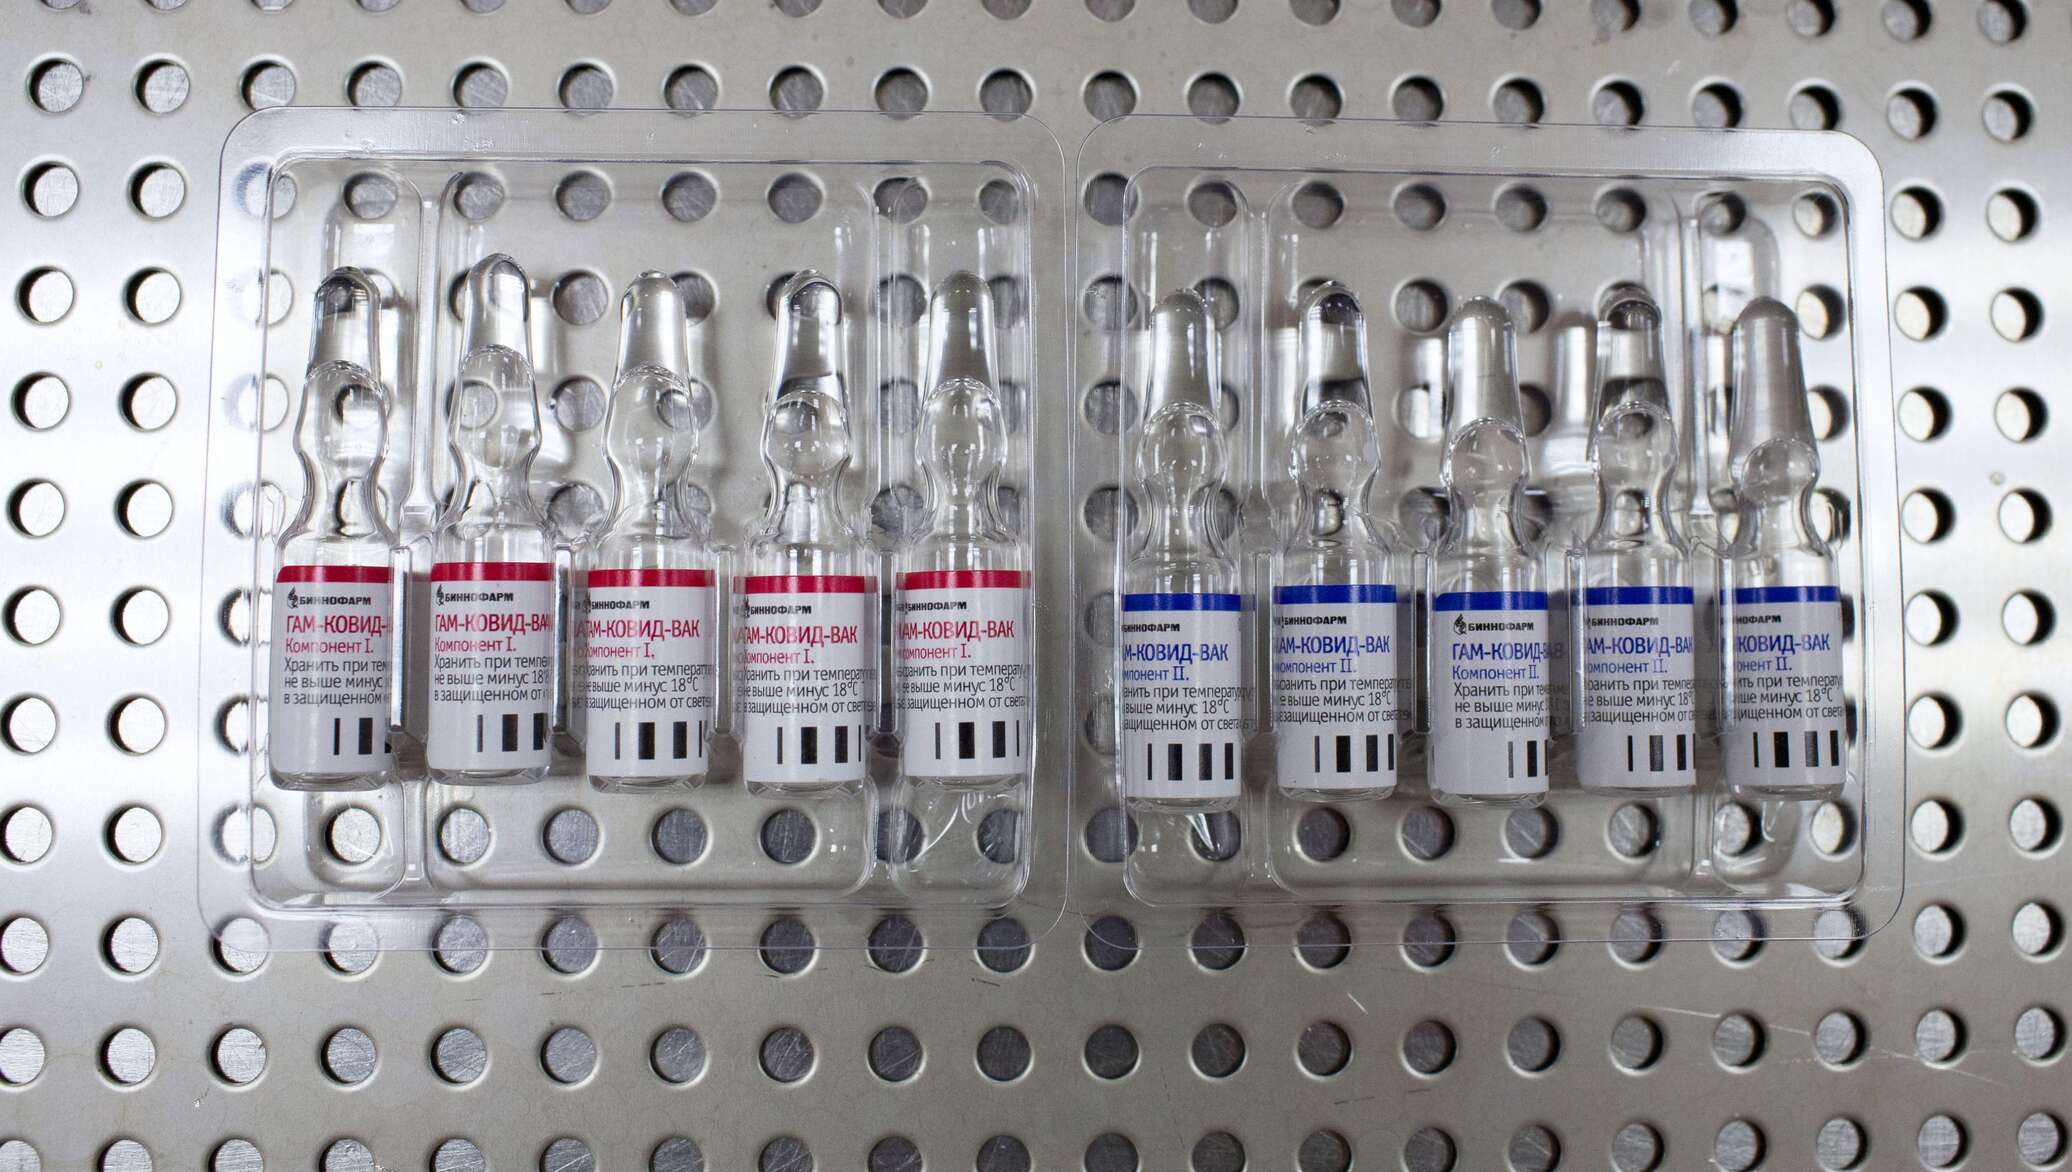 фото вакцины от коронавируса гам ковид